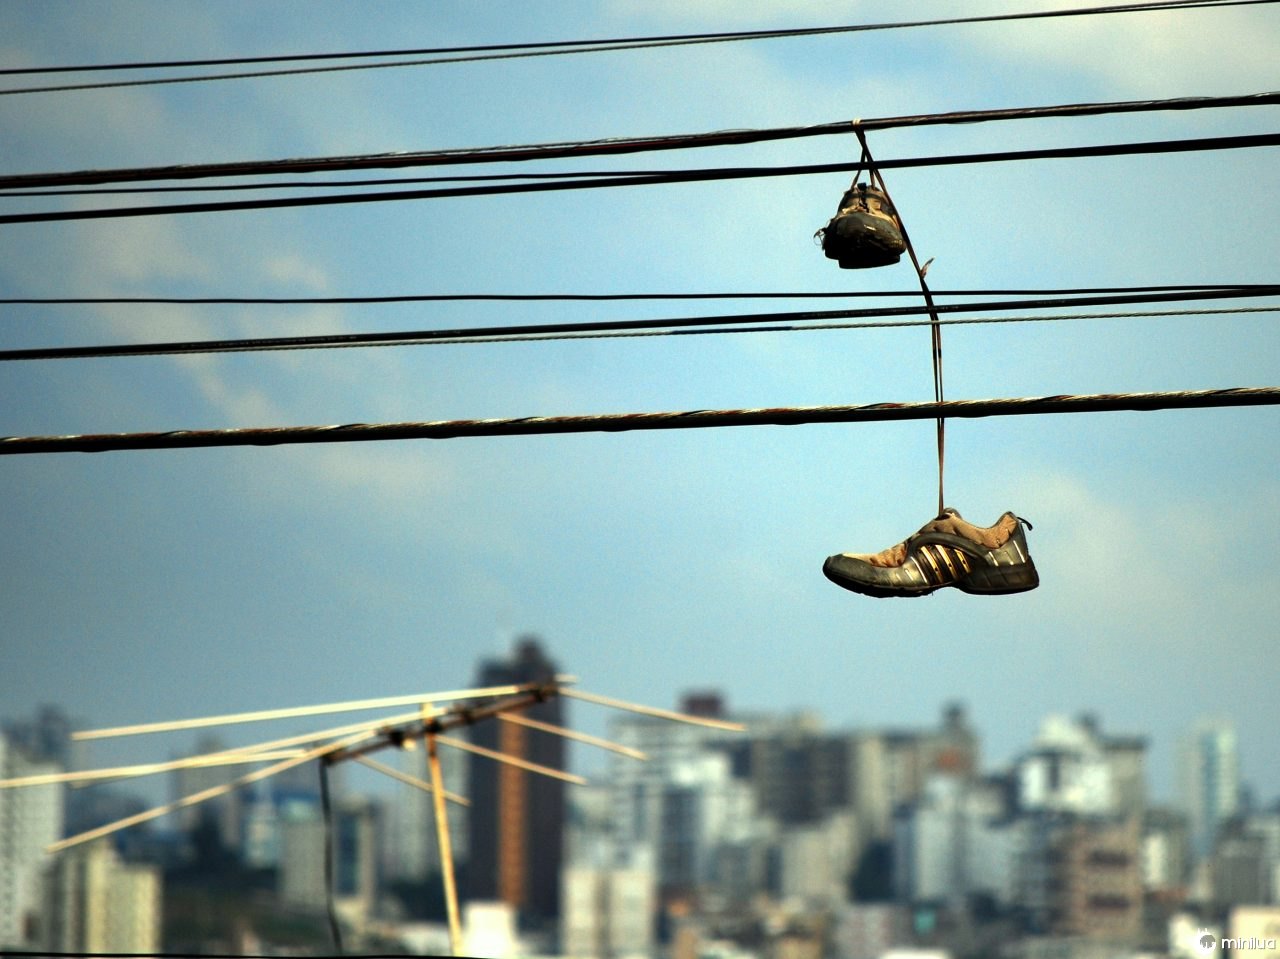  Sicuramente avrete visto un paio di scarpe da ginnastica appese ai fili della strada, ma cosa significa?